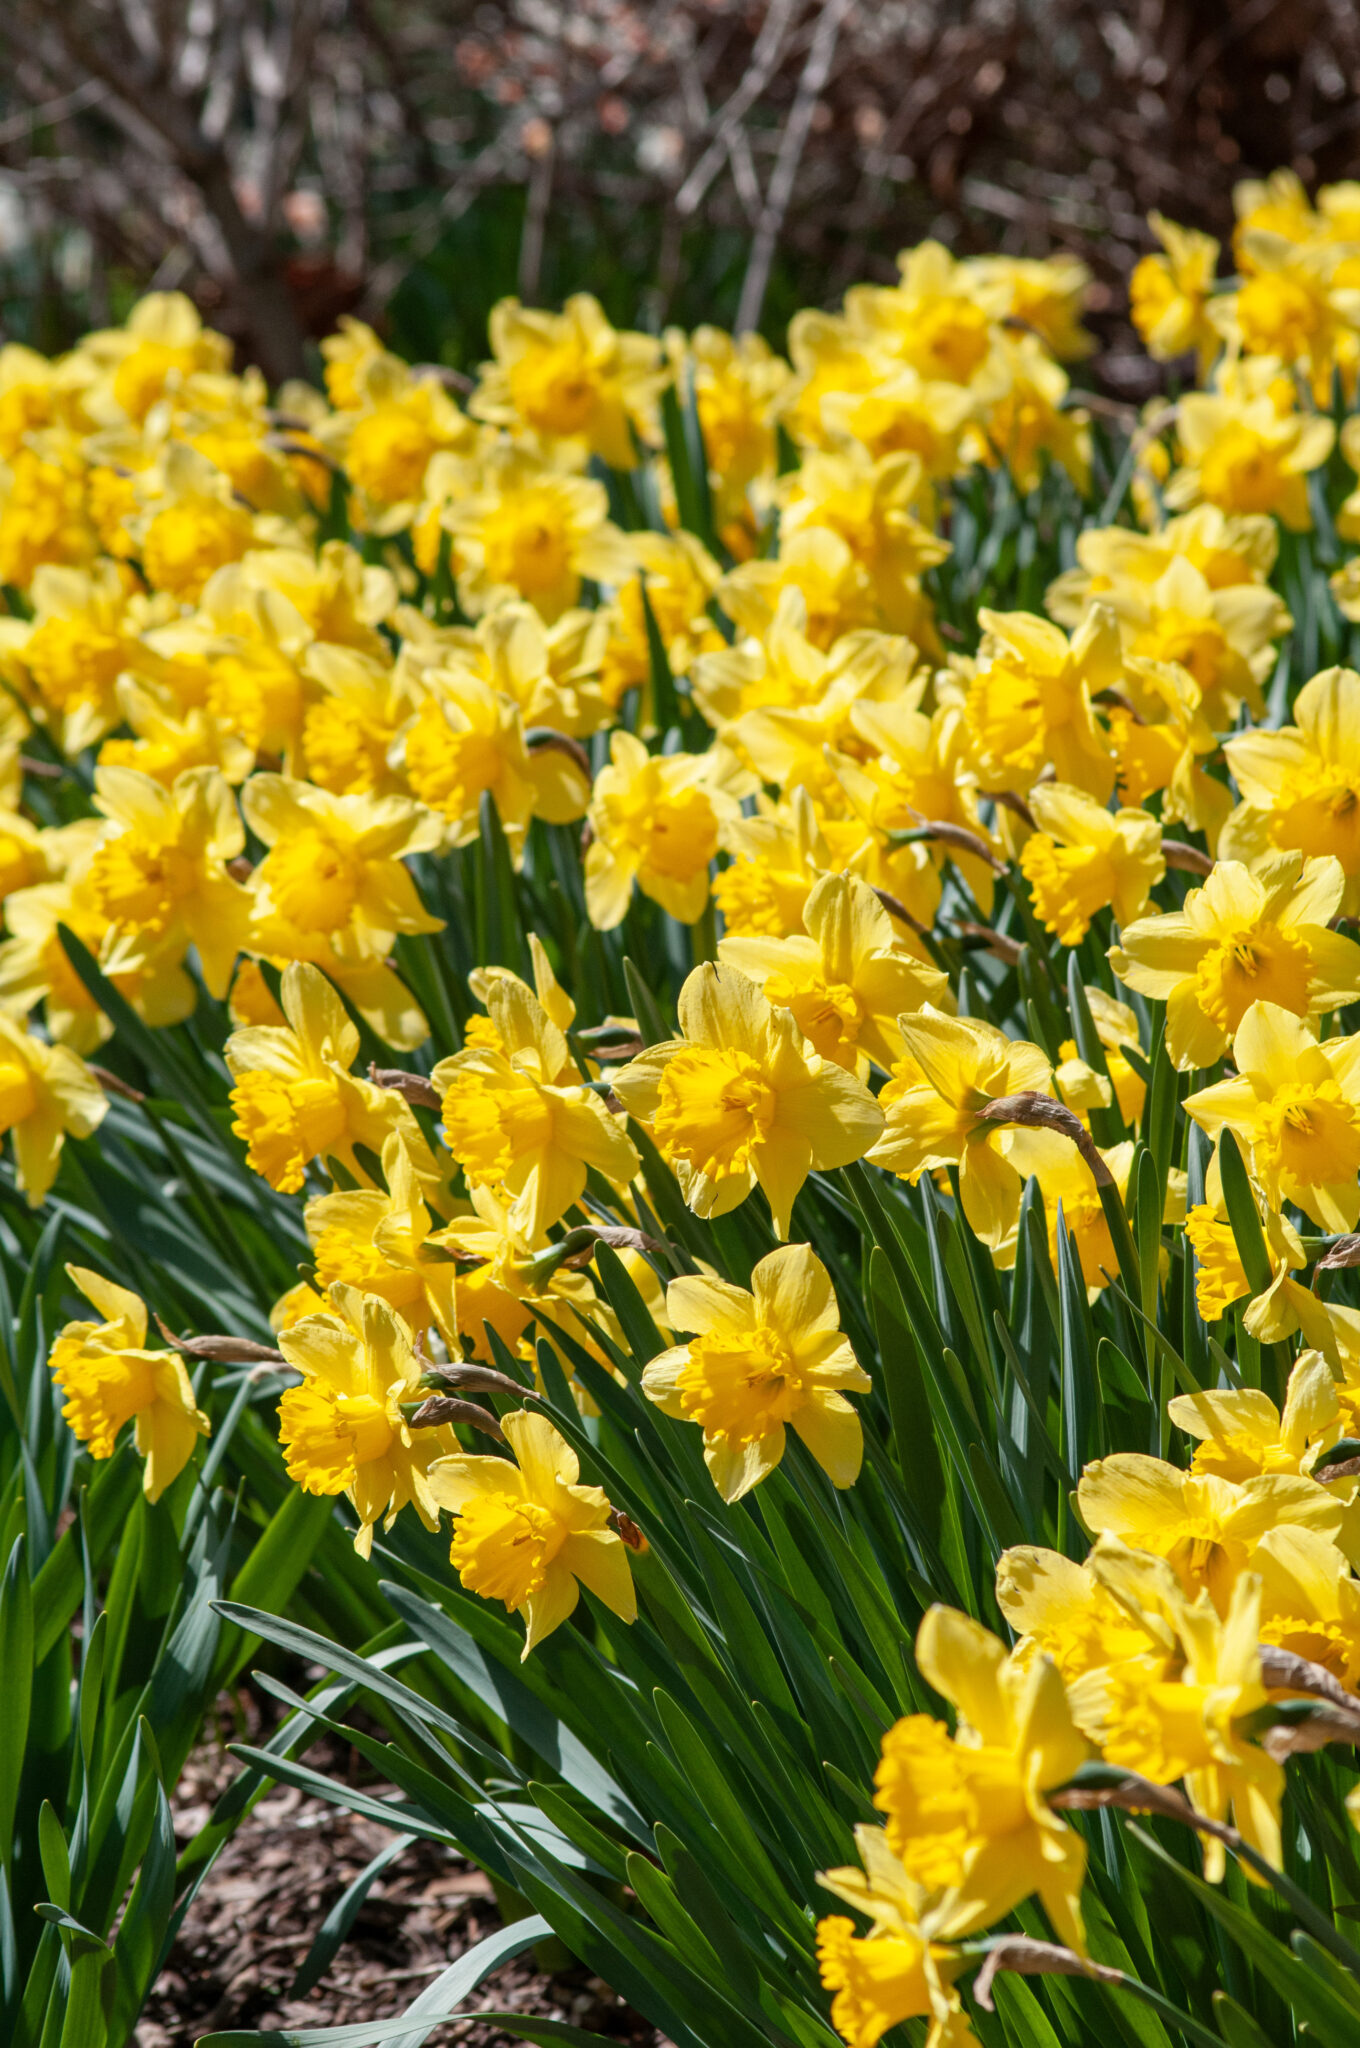 Daffodils / RHS Gardening